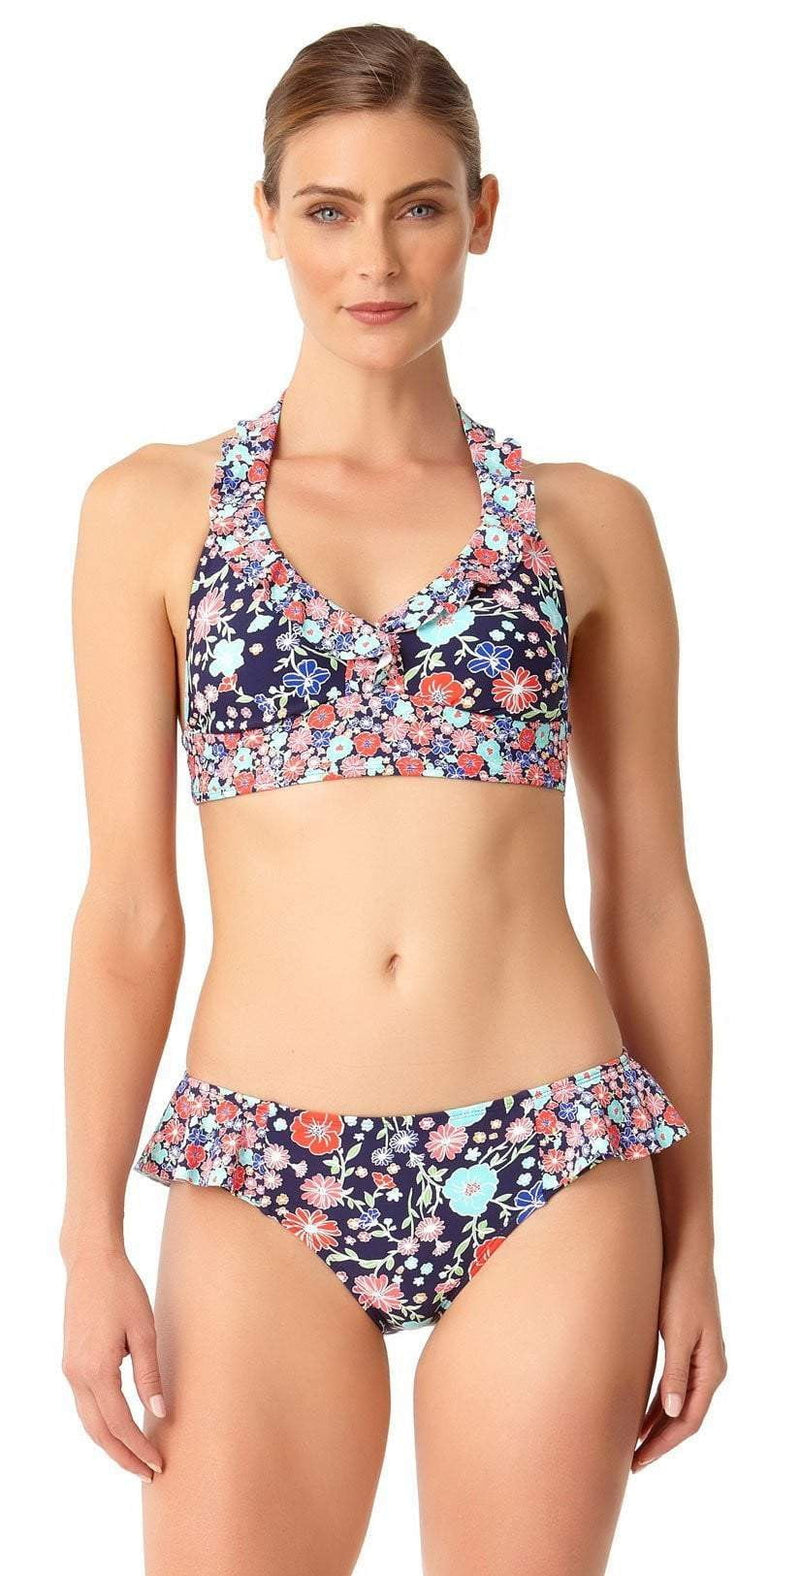 South Beach Swimsuits Anne Cole Lazy Daisy Marilyn Flounce Halter Bikini Top  – South Beach Swimsuits